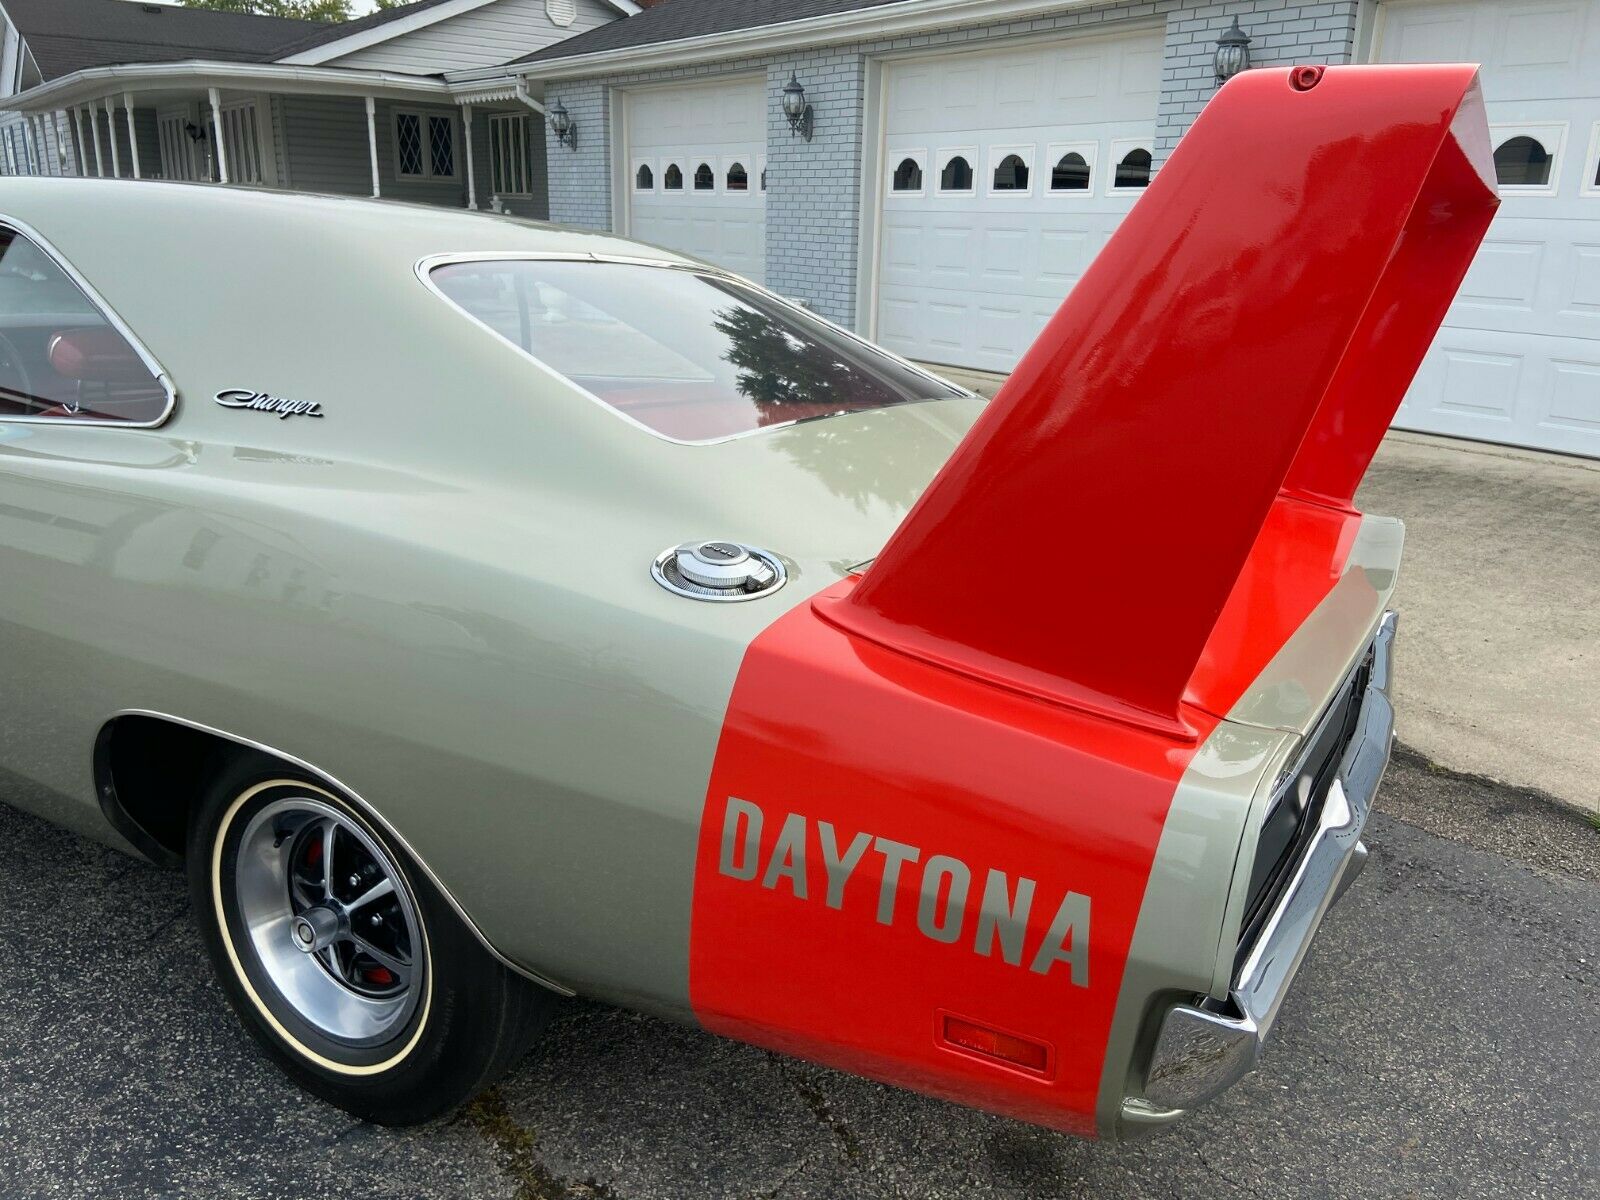 Ohio Family's Cherished Dodge Charger Daytona For Sale - eBay Motors Blog